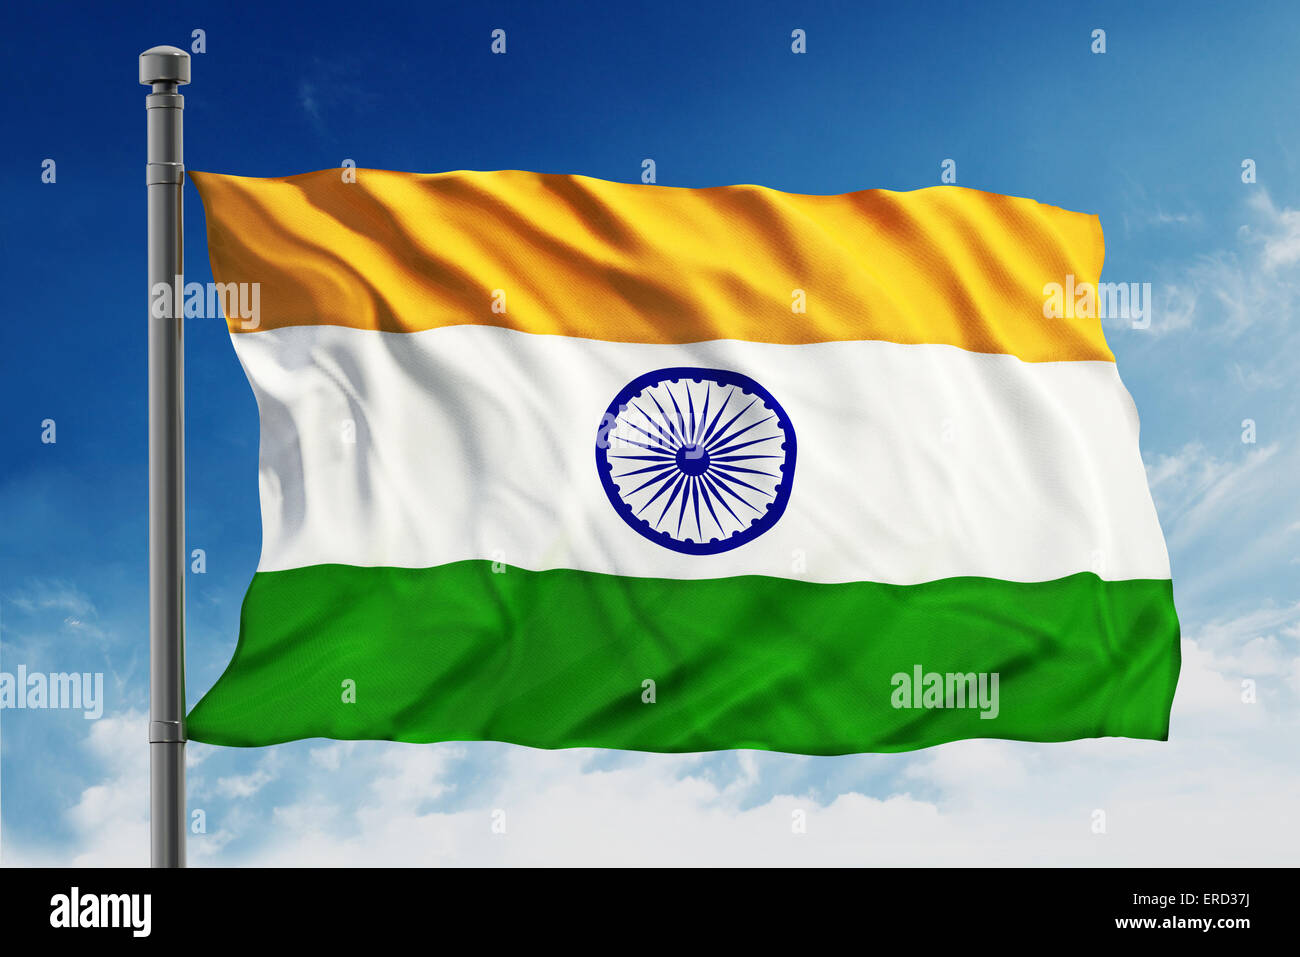 India flag isolated on blue sky background Stock Photo - Alamy